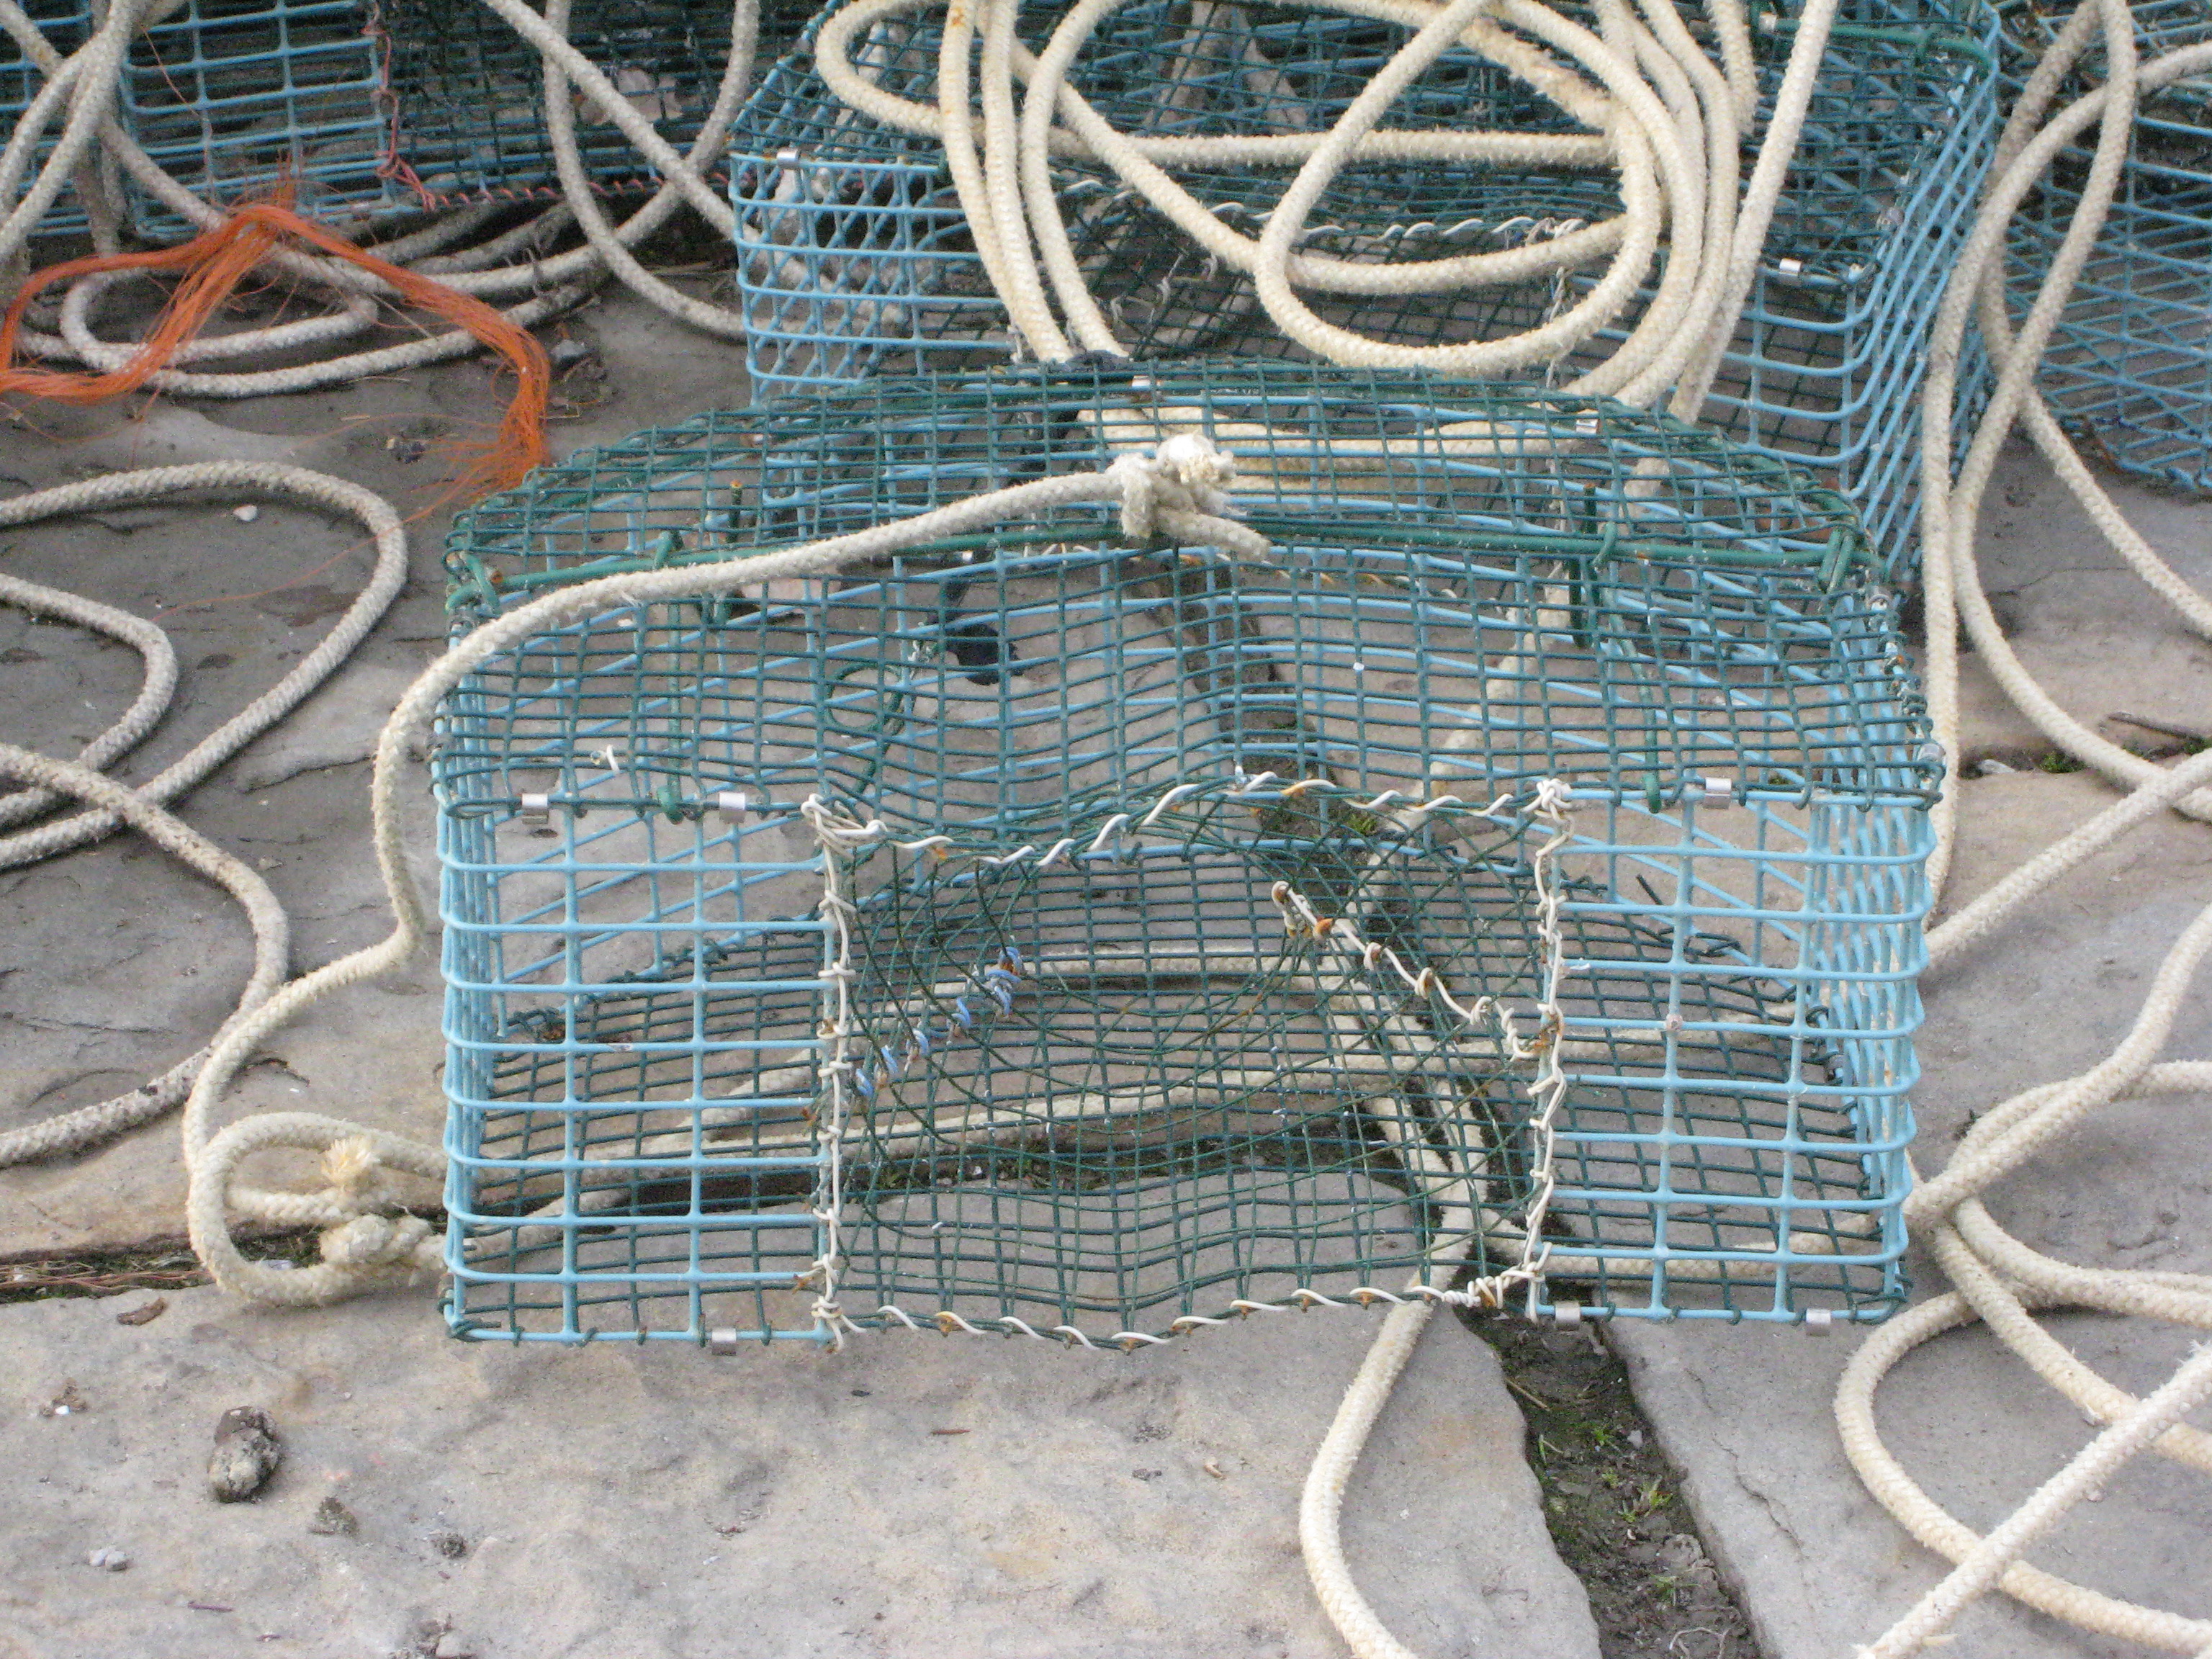 Crab trap - Wikipedia